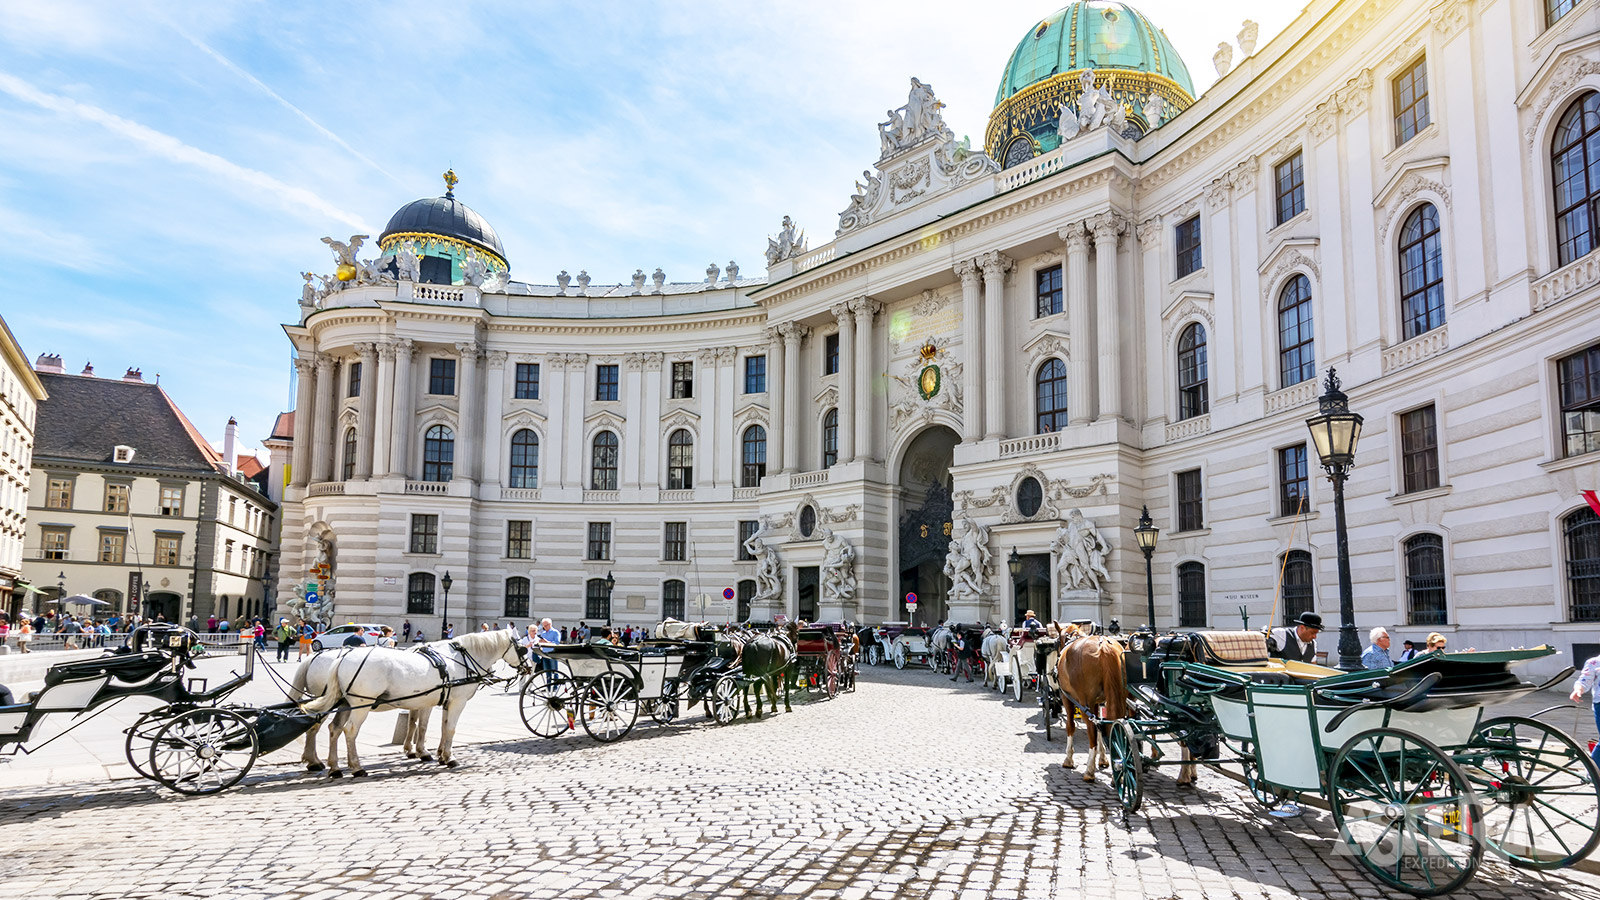 Ooit was de Hofburg één van de paleizen van de Habsburgers, vandaag huist het verschillende musea in Wenen